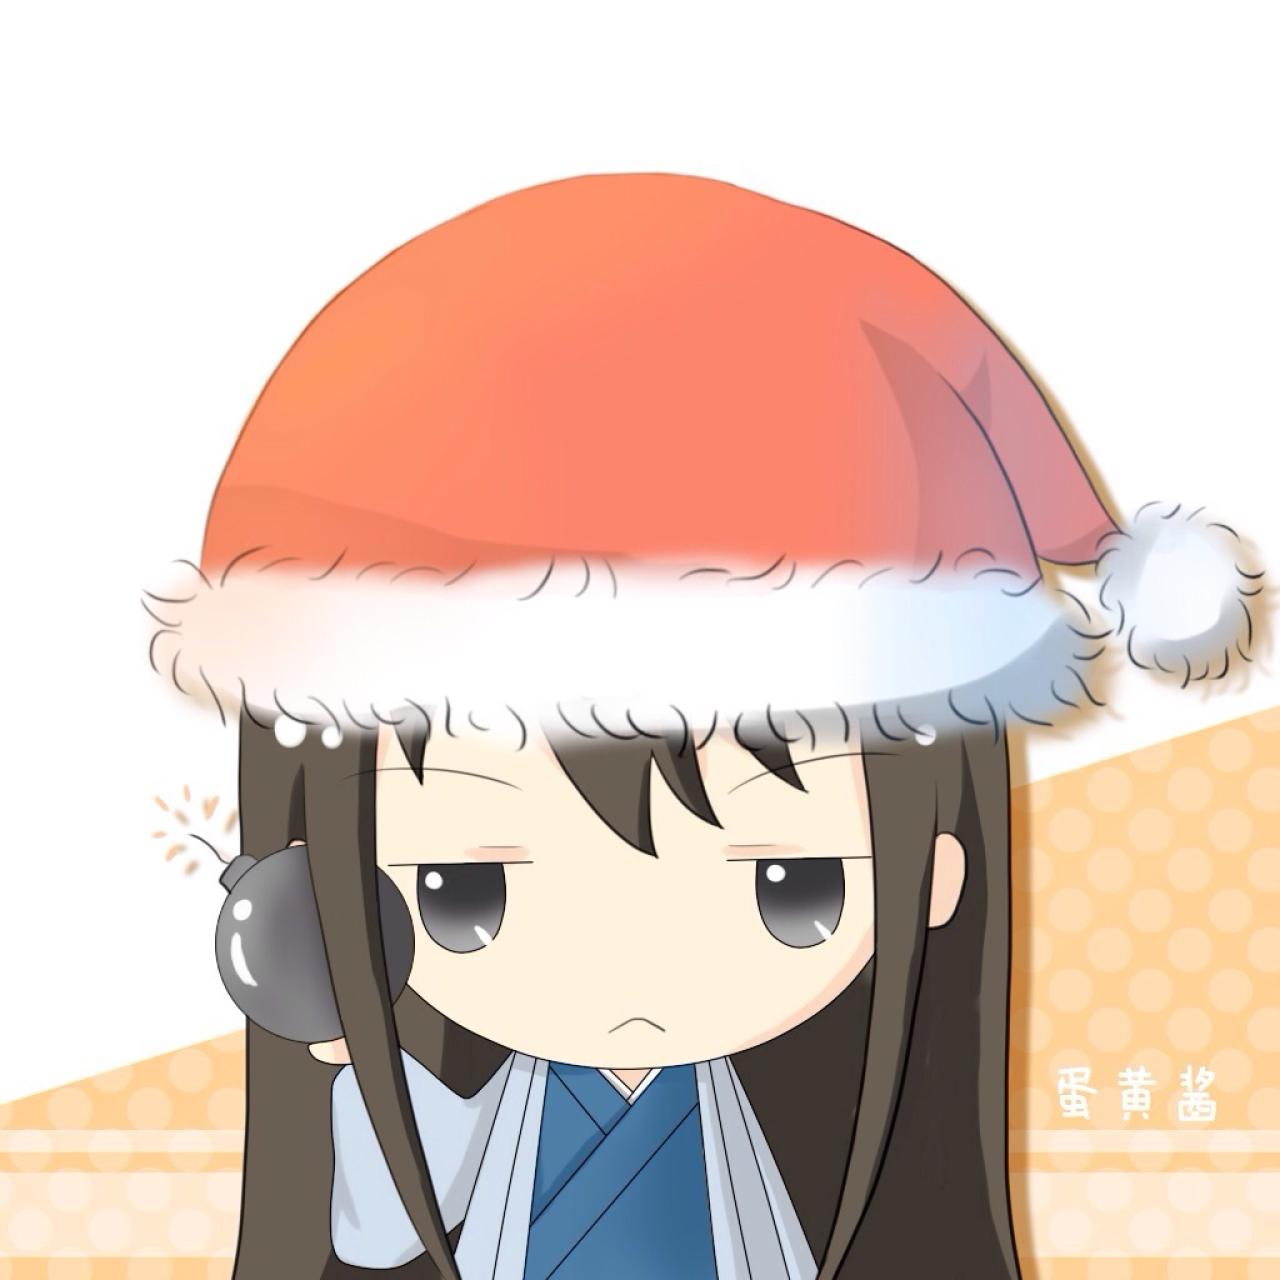 《银魂》桂小太郎戴着圣诞帽拿着炸弹头像